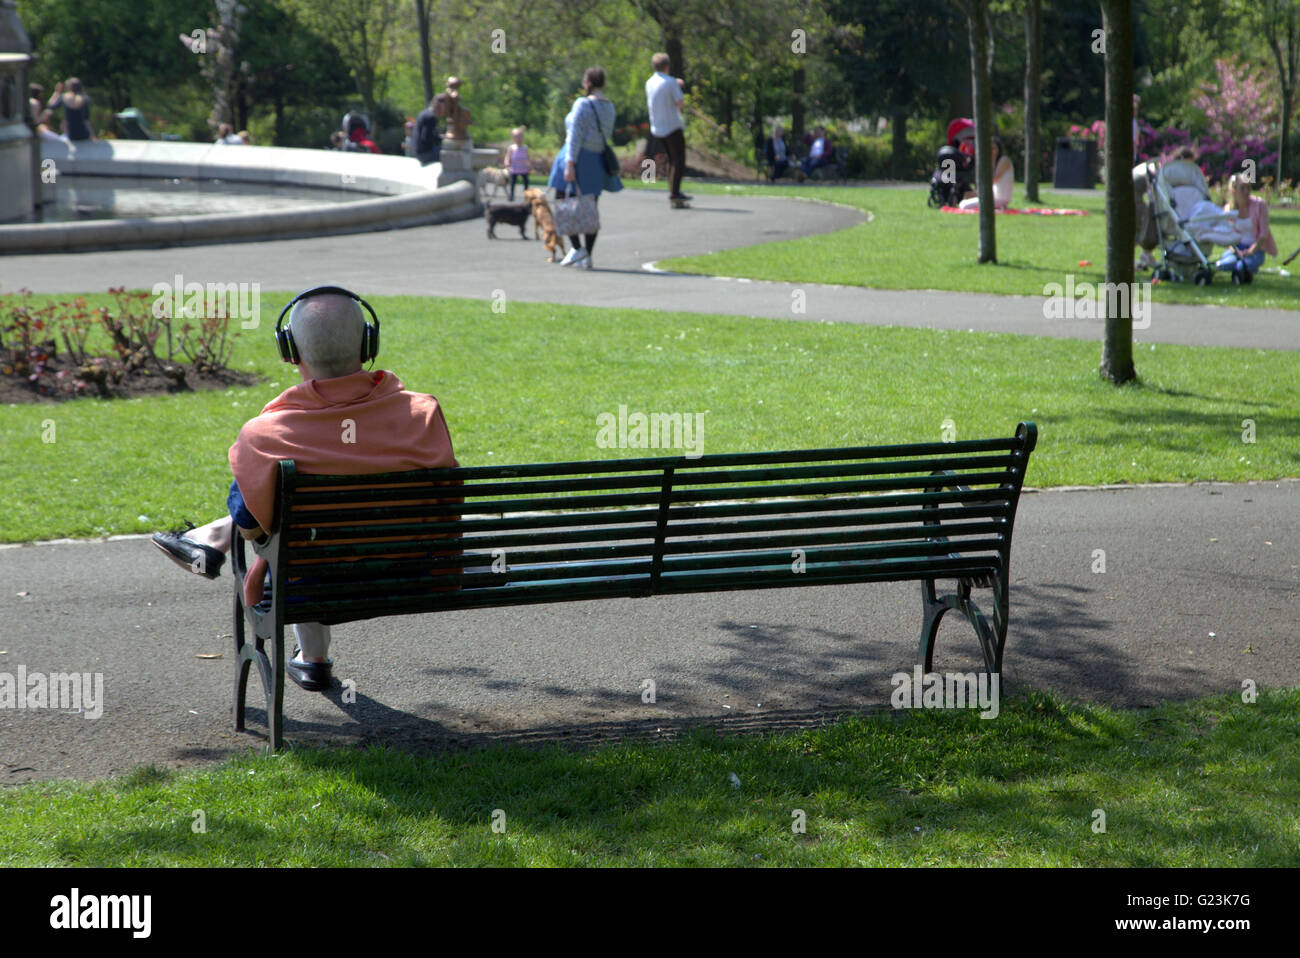 Mann oder junge mit Kopfhörern auf Park bench Kelvingrove Park Glasgow, Scotland, UK. Stockfoto